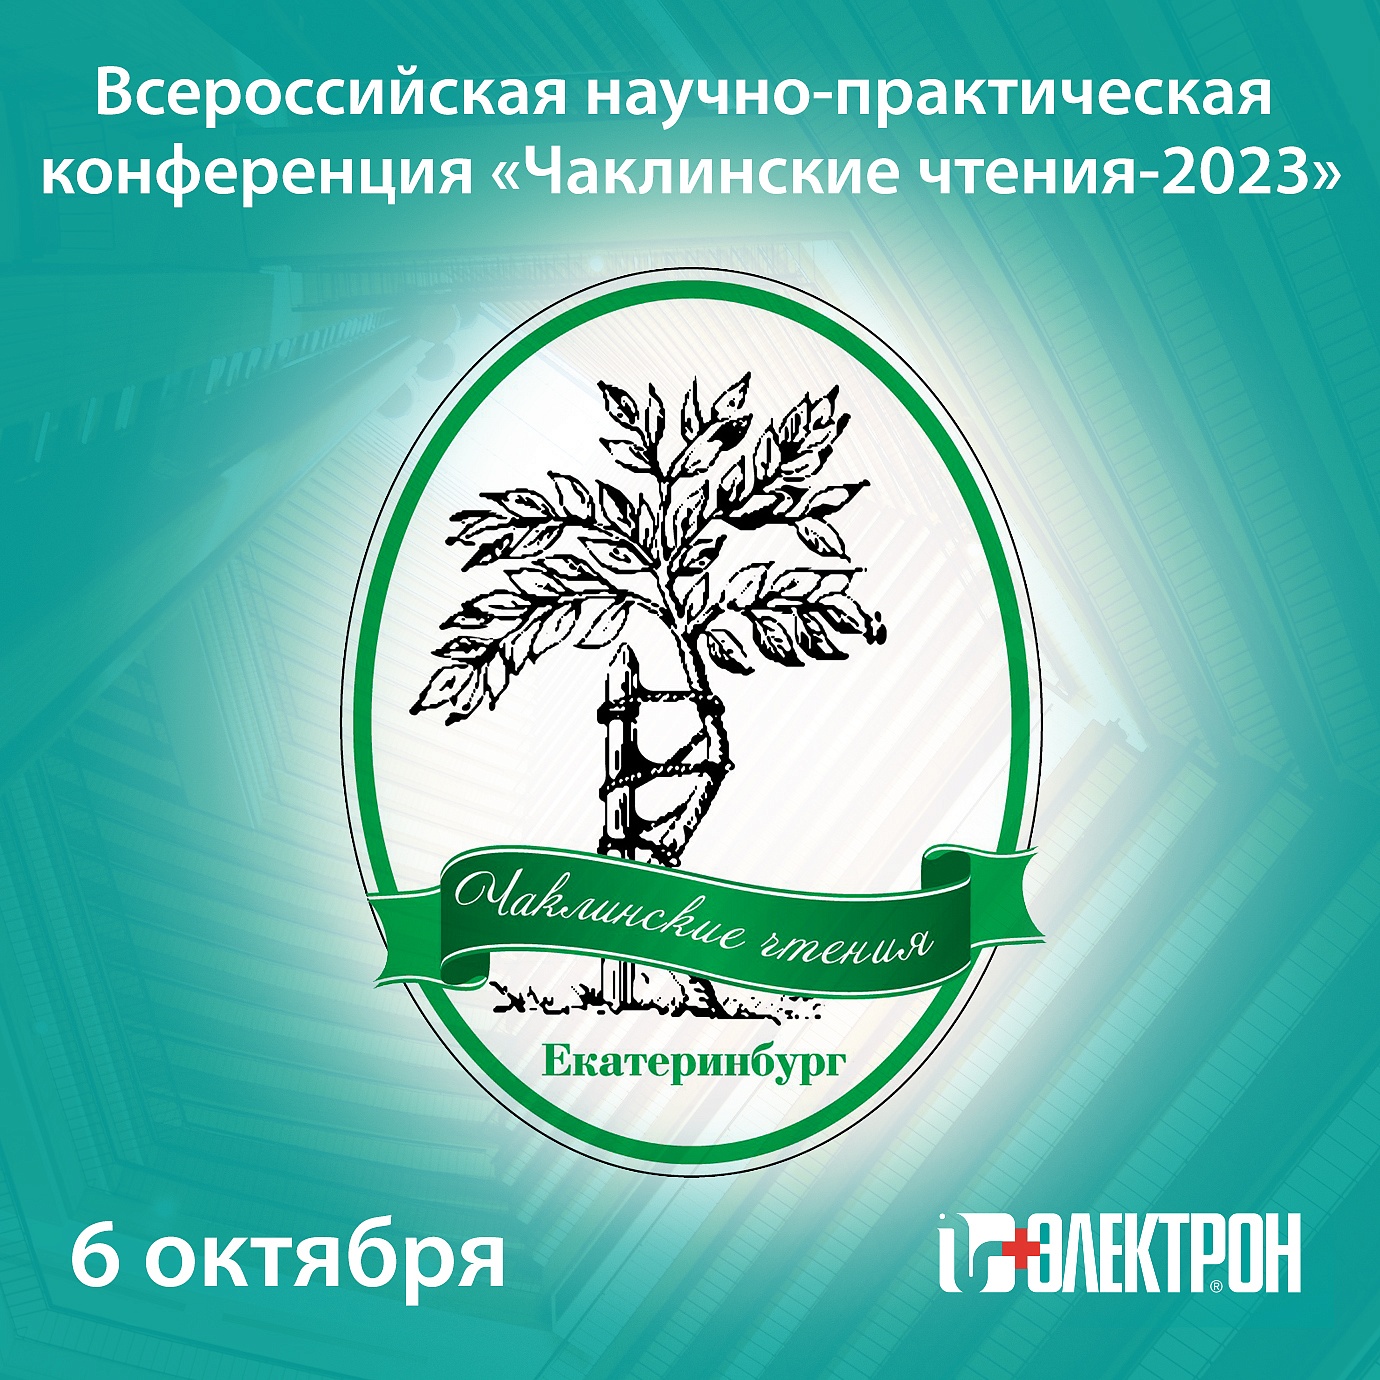 Приглашаем на научно-практическую конференцию «Чаклинские чтения» в Екатеринбурге